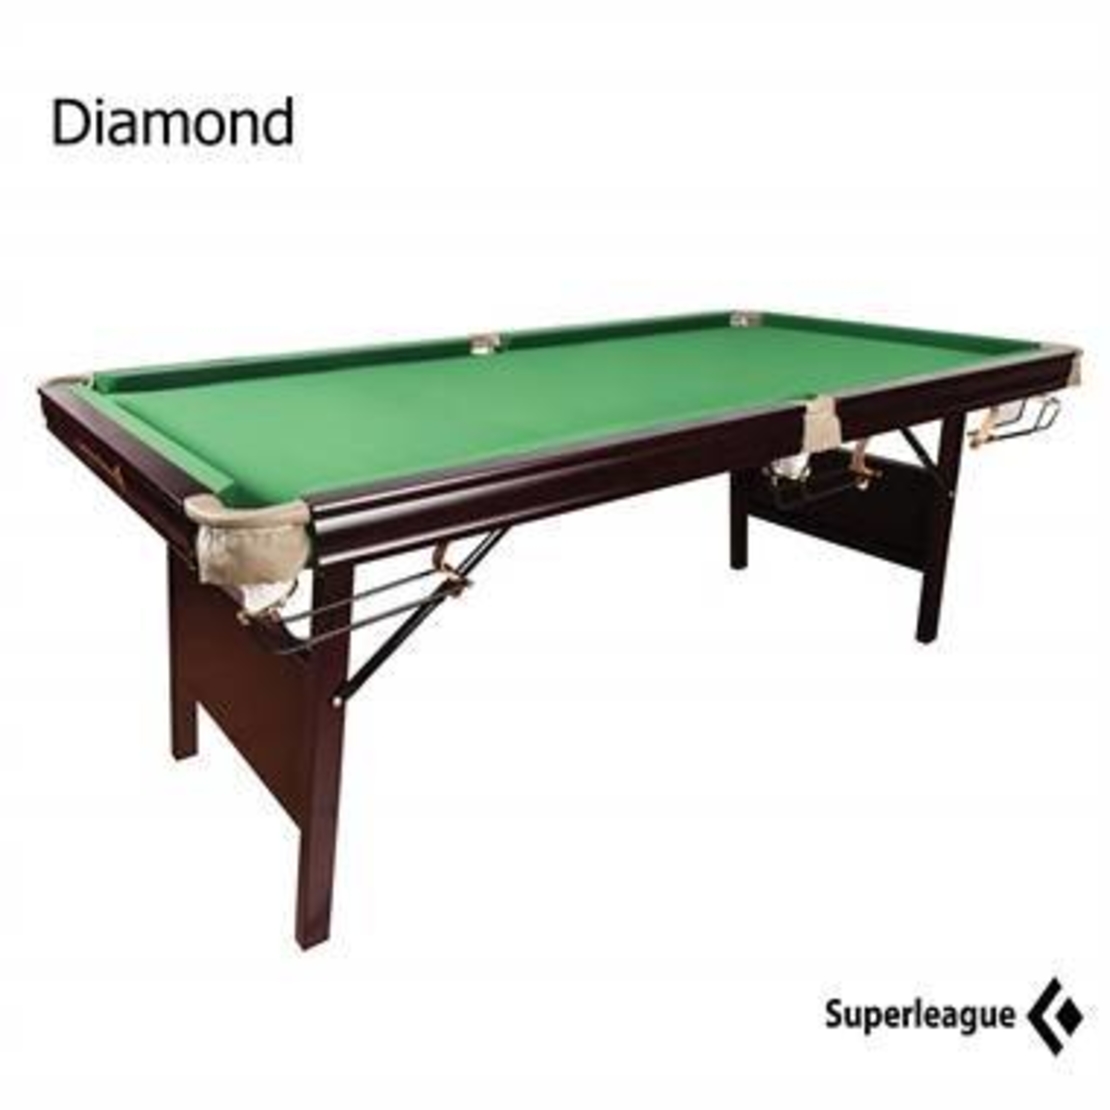 שולחן ביליארד מתקפל 6 פיט SuperLeague Diamond